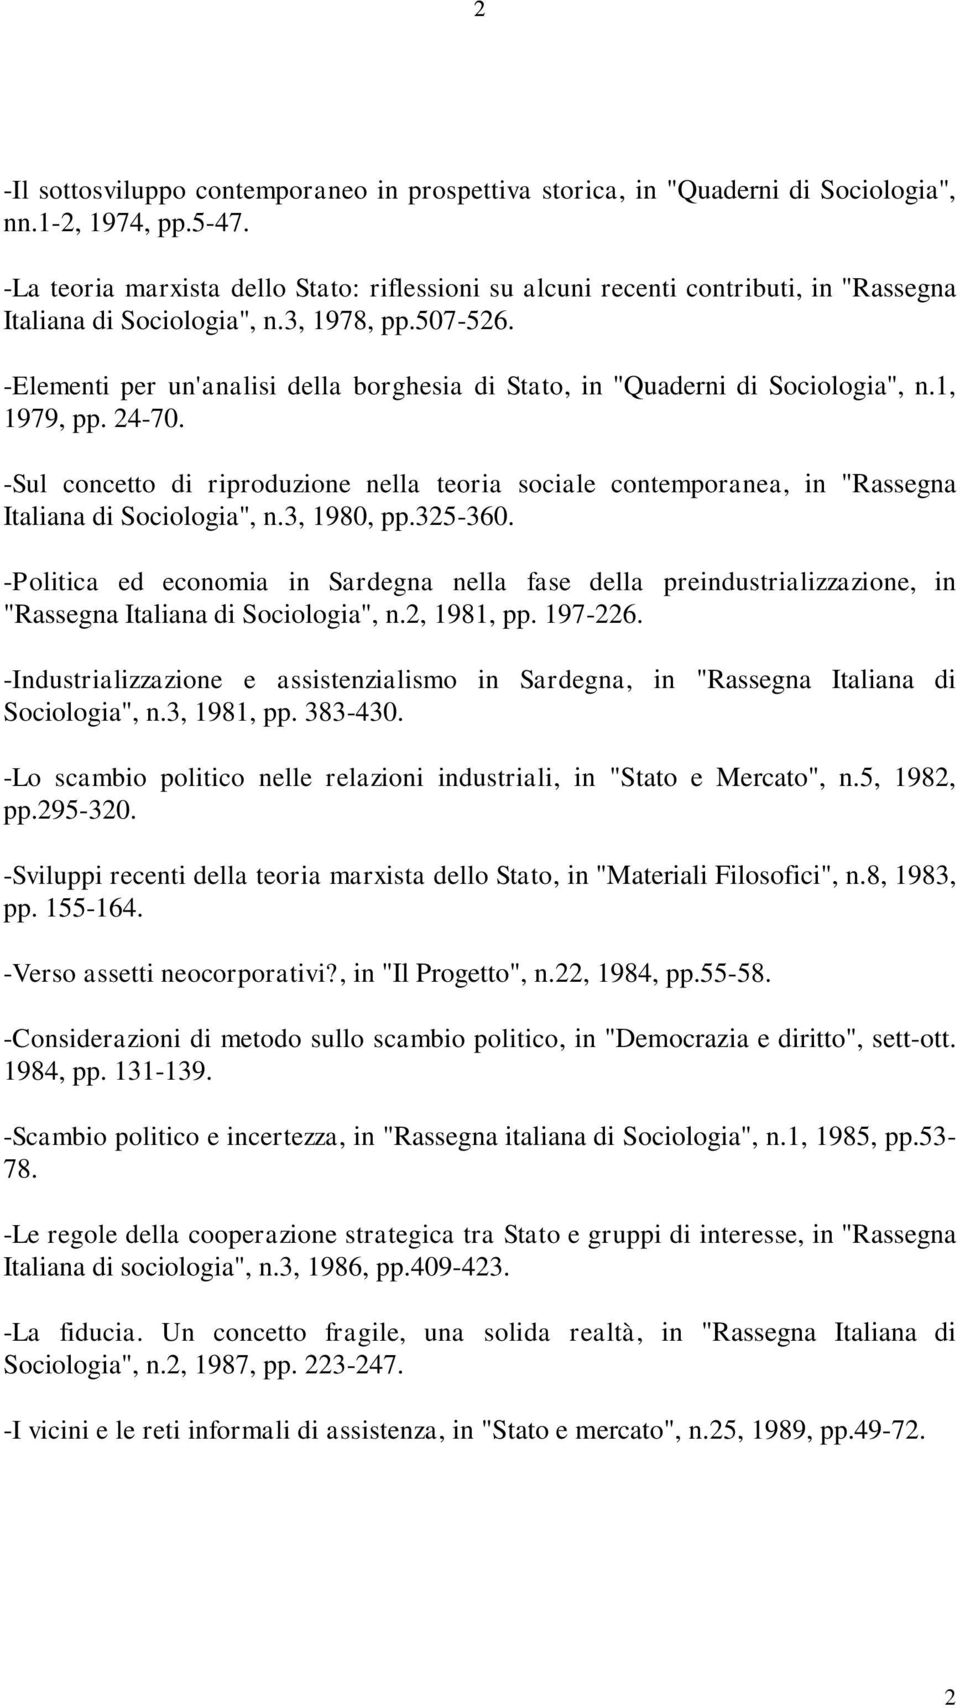 -Elementi per un'analisi della borghesia di Stato, in "Quaderni di Sociologia", n.1, 1979, pp. 24-70.